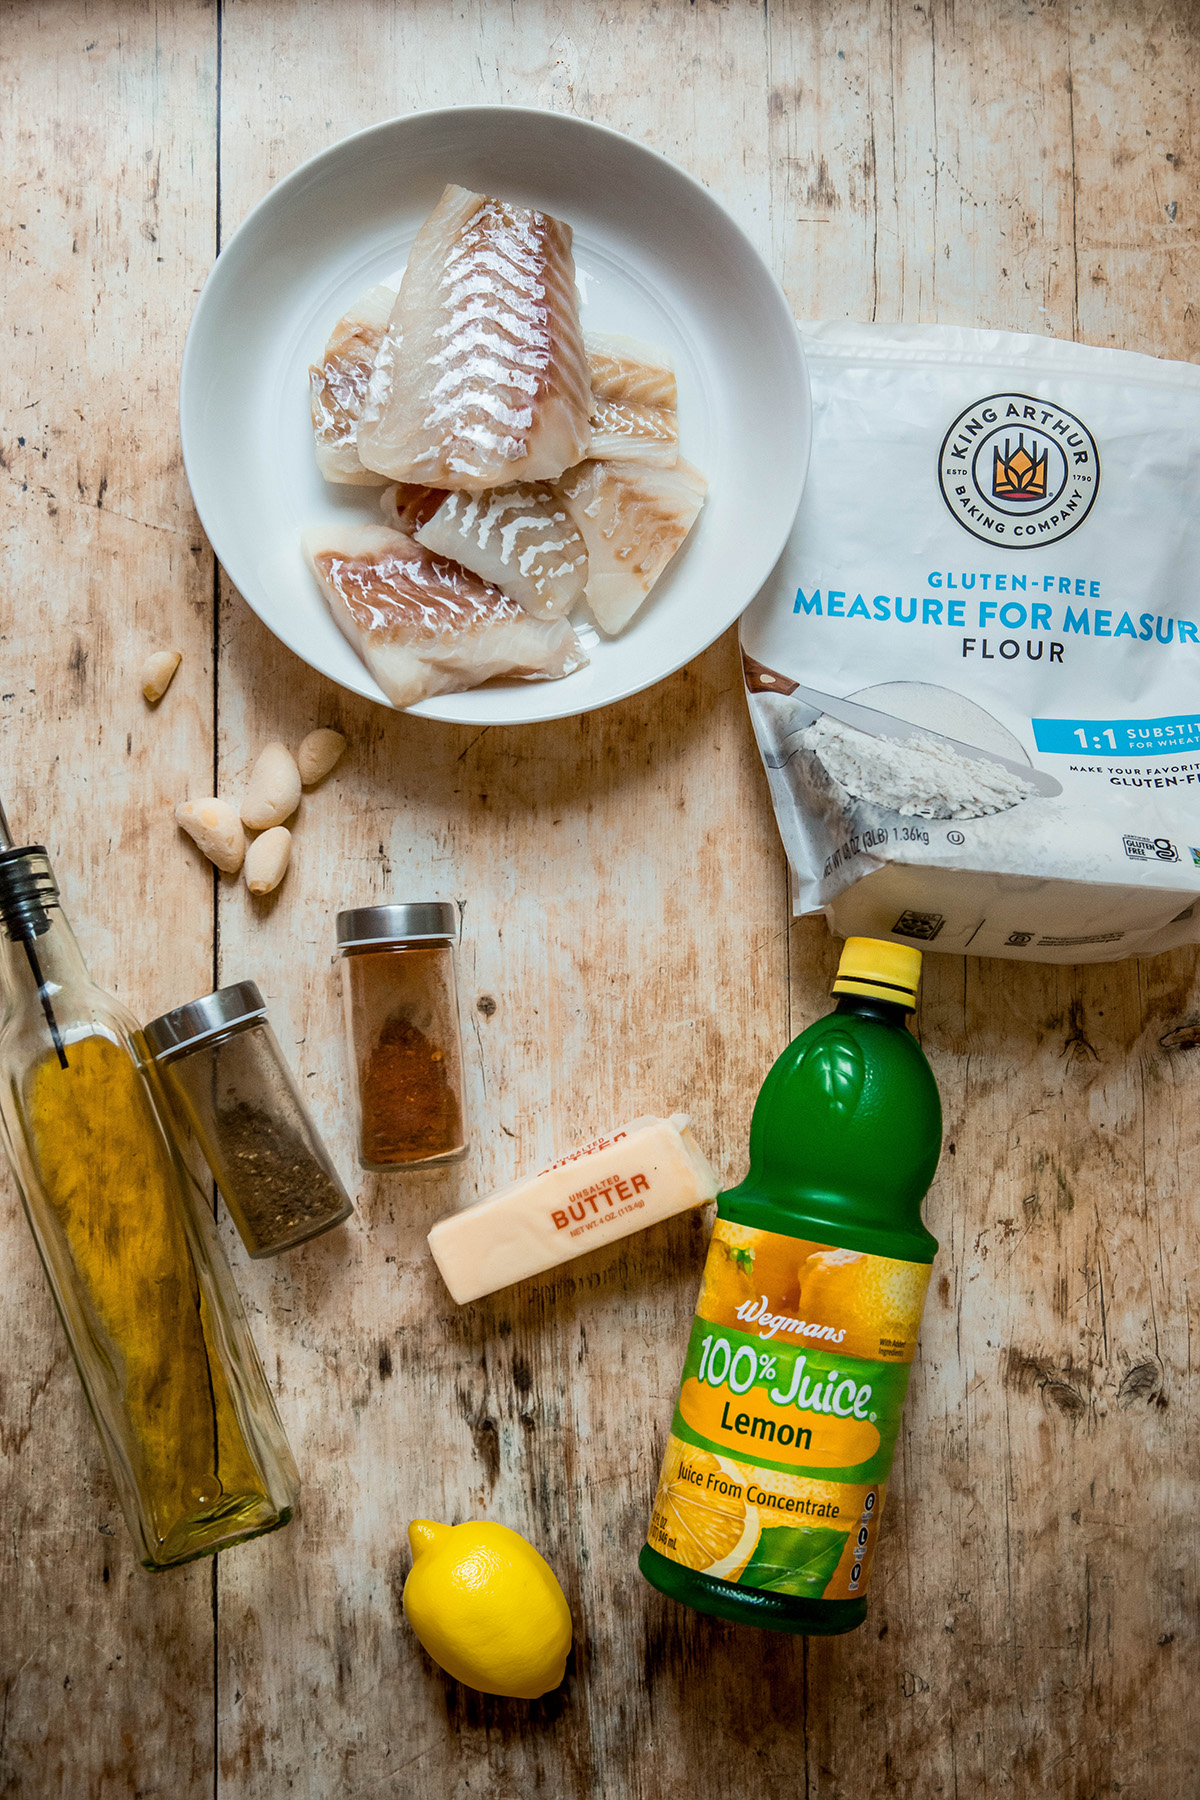 Easy Mediterranean Cod: Baked Fish Recipe with Lemon ingredients